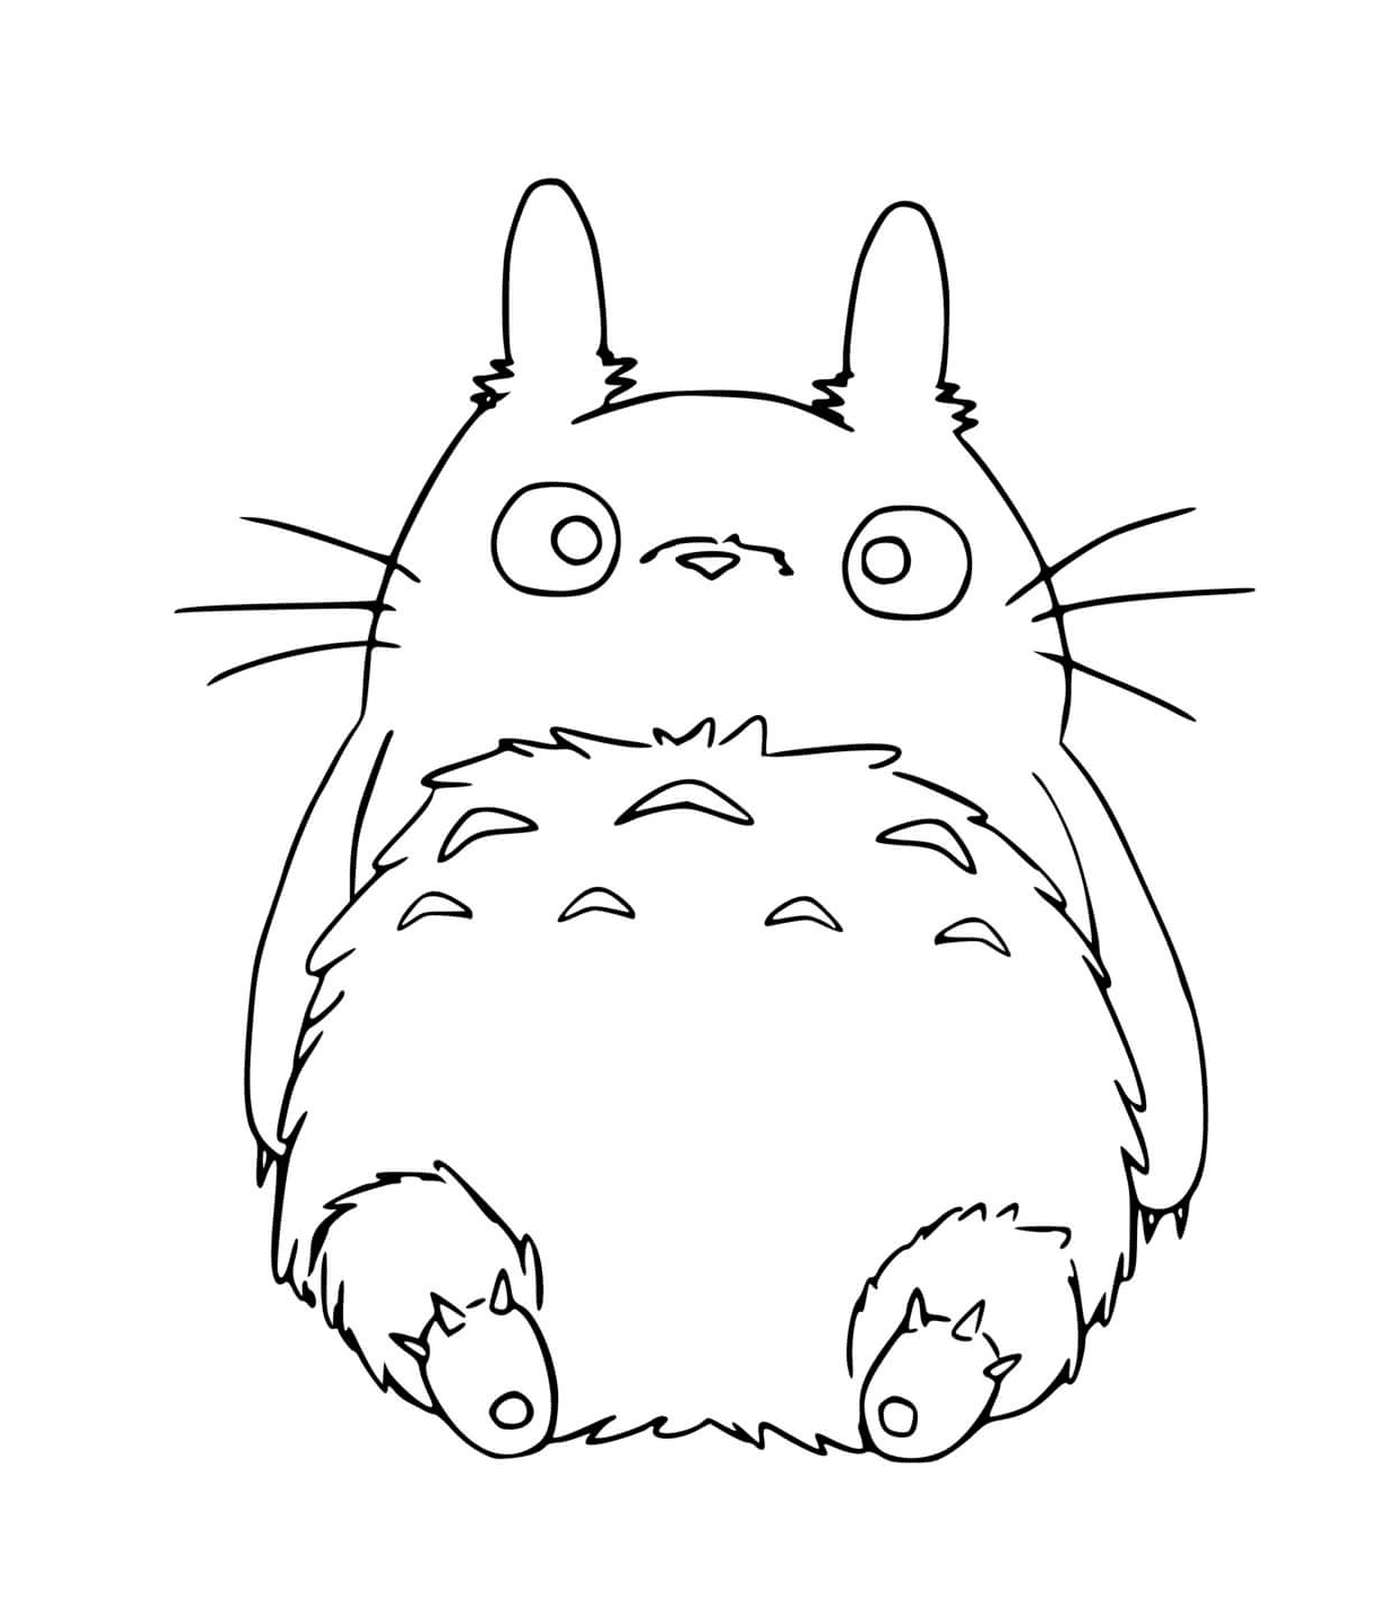  Totoro sentado en el suelo 